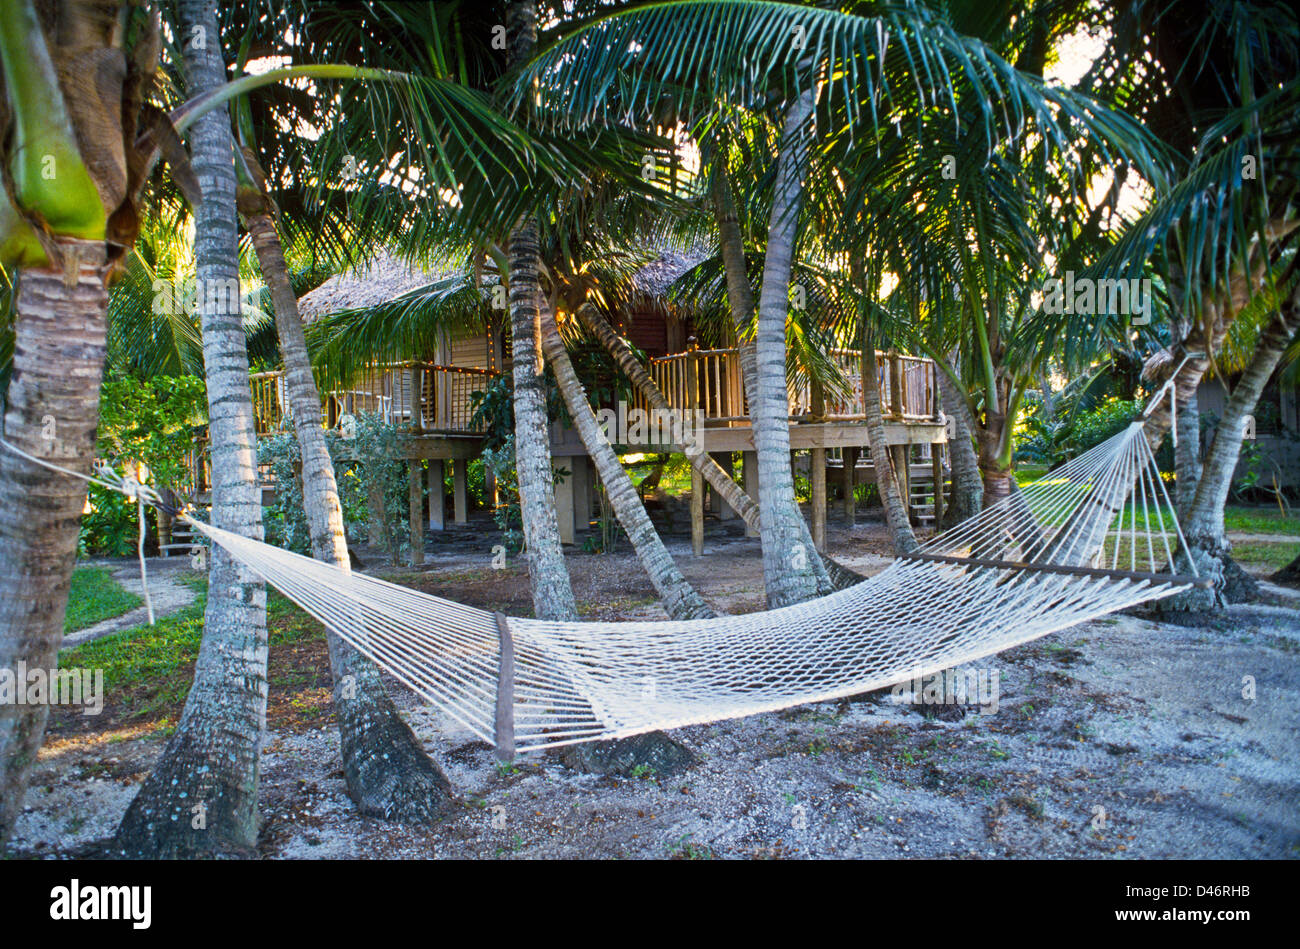 Eine Hängematte und tropischen Unterkünfte erwarten die Gäste im Little Palm Island Resort, aus Little Torch Key in den Florida Keys, USA. Stockfoto